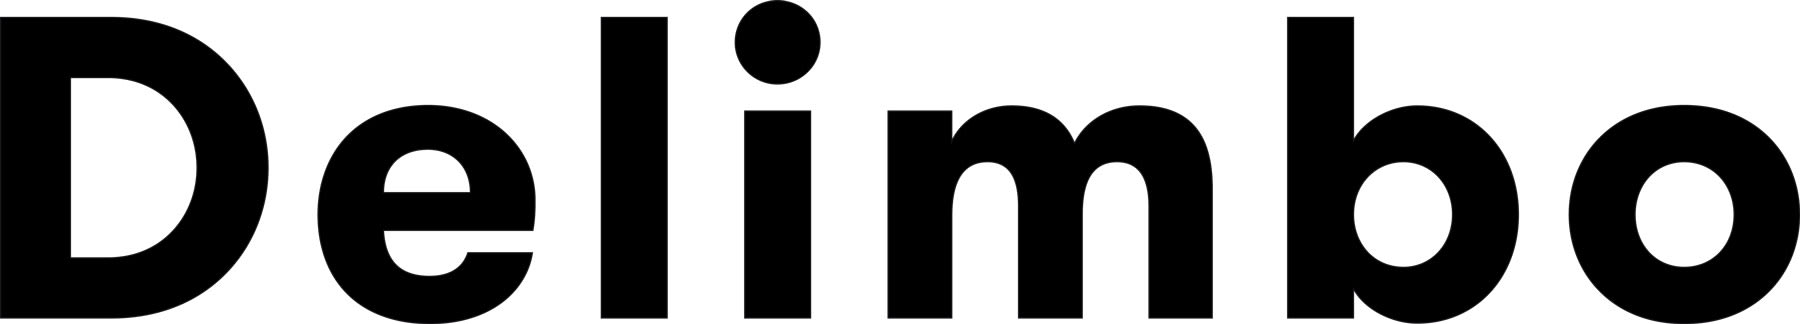 Delimbo company logo